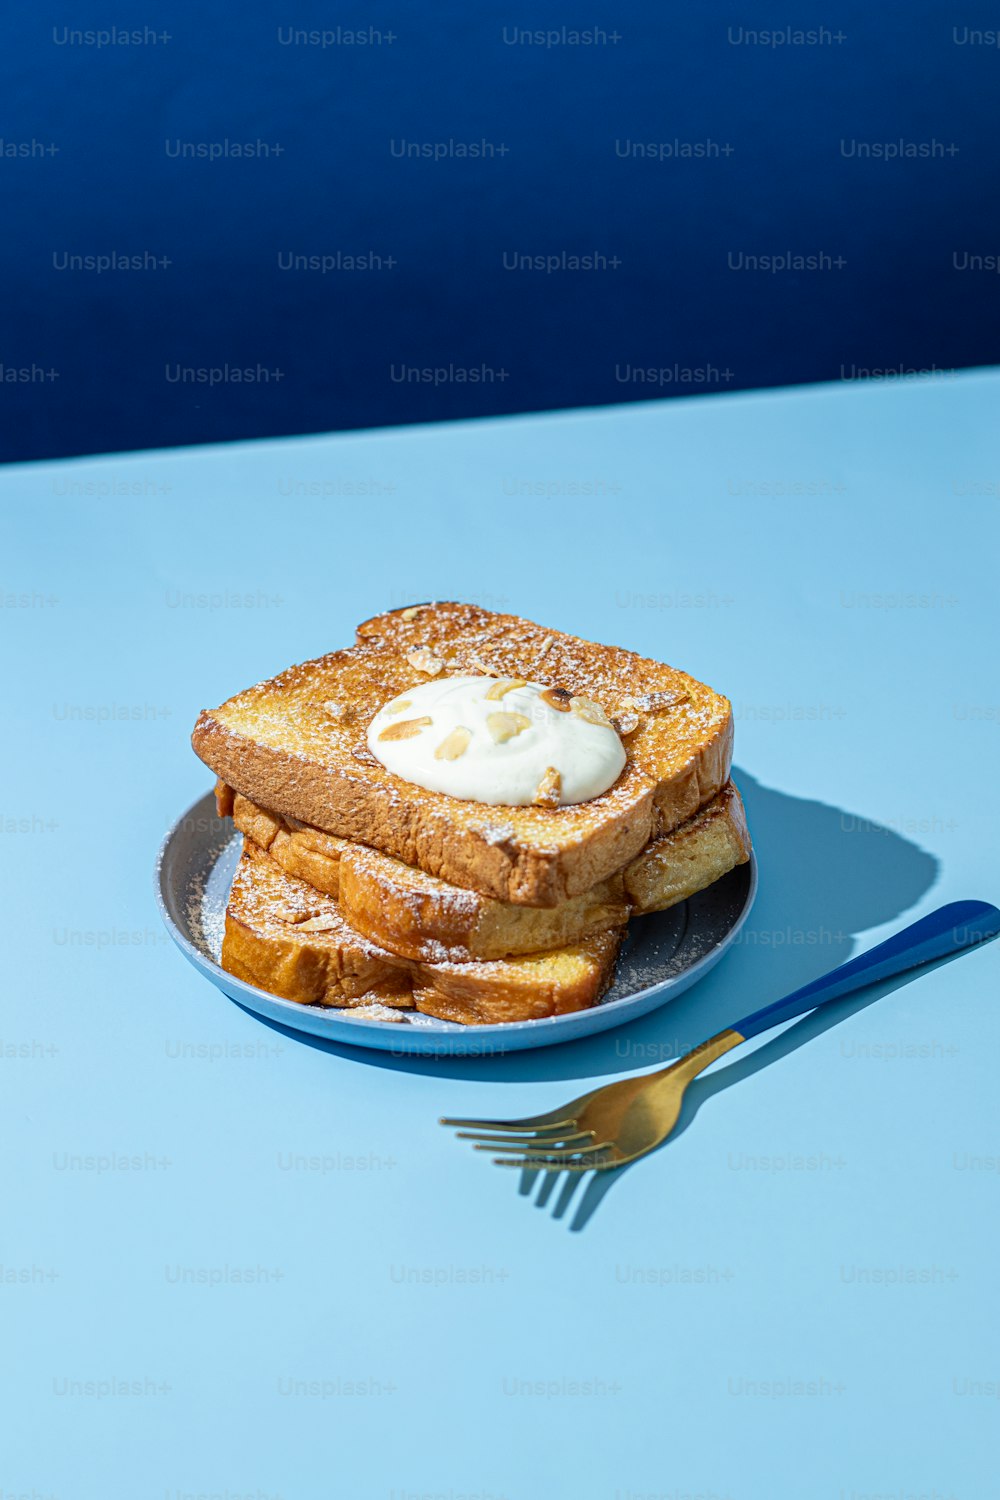 Un piatto blu condito con toast alla francese e panna montata